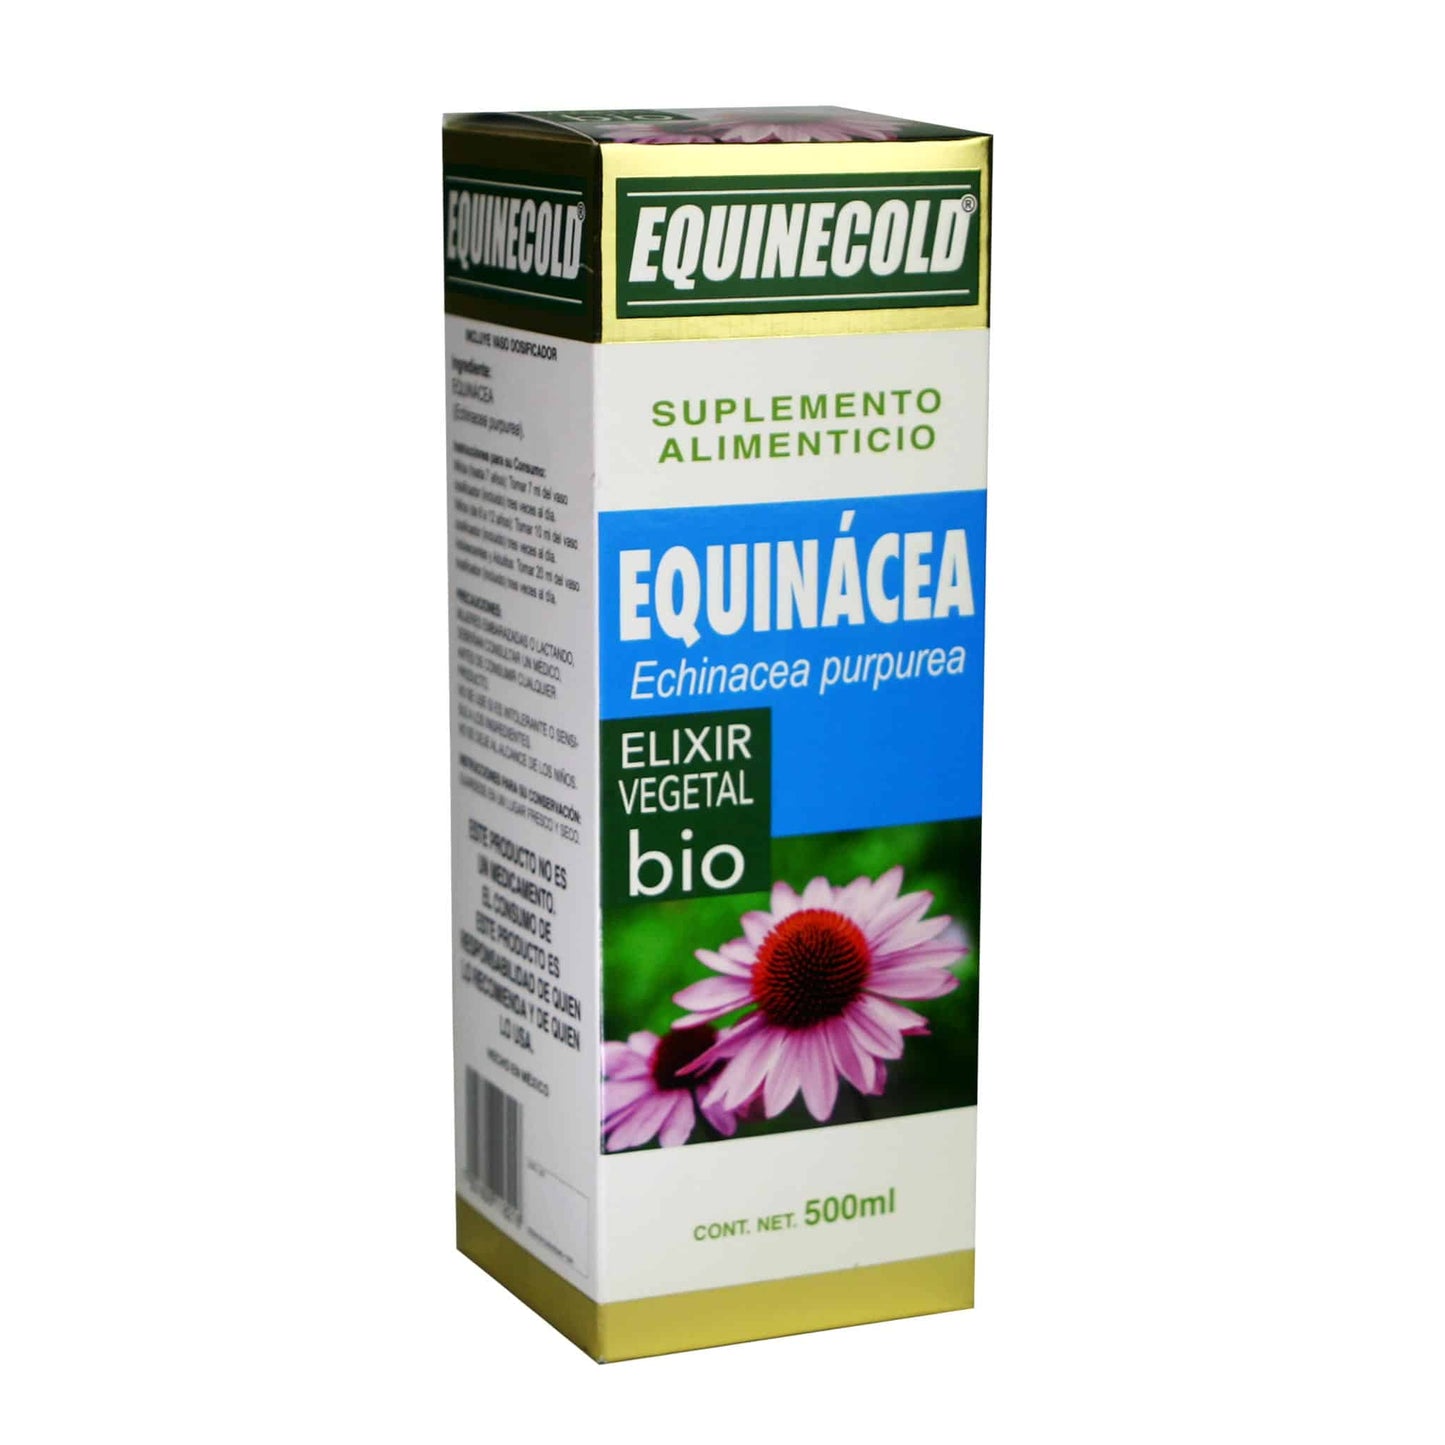 EQUINECOLD ® elixir vegetal 500ml